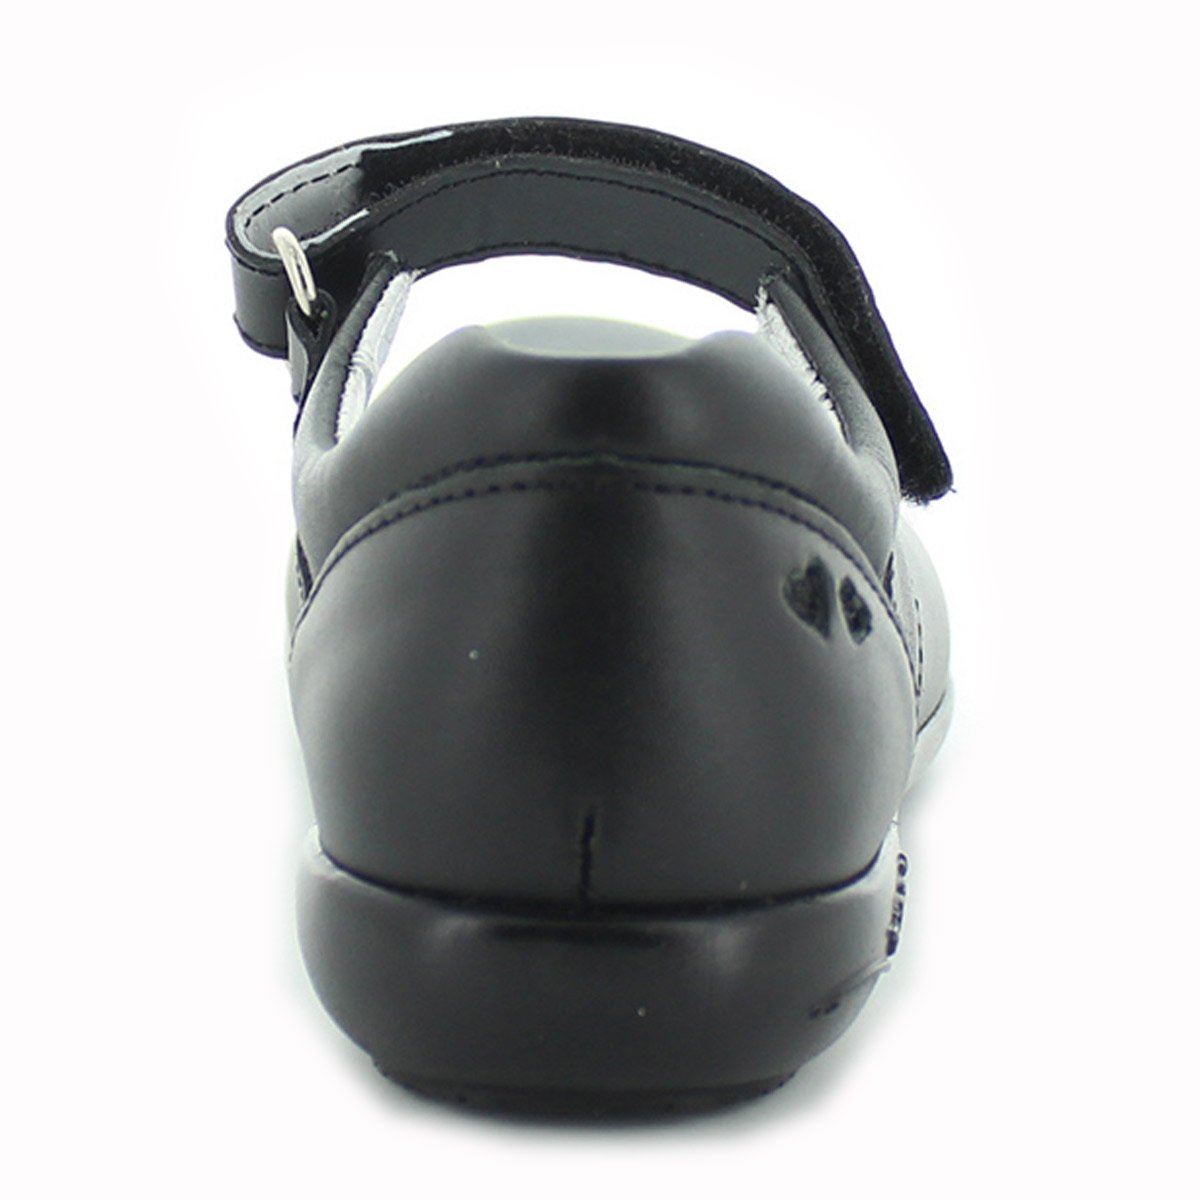 Zapatilla con Velcro Escolar 15-17 Chabelo Mod. 40103Eb